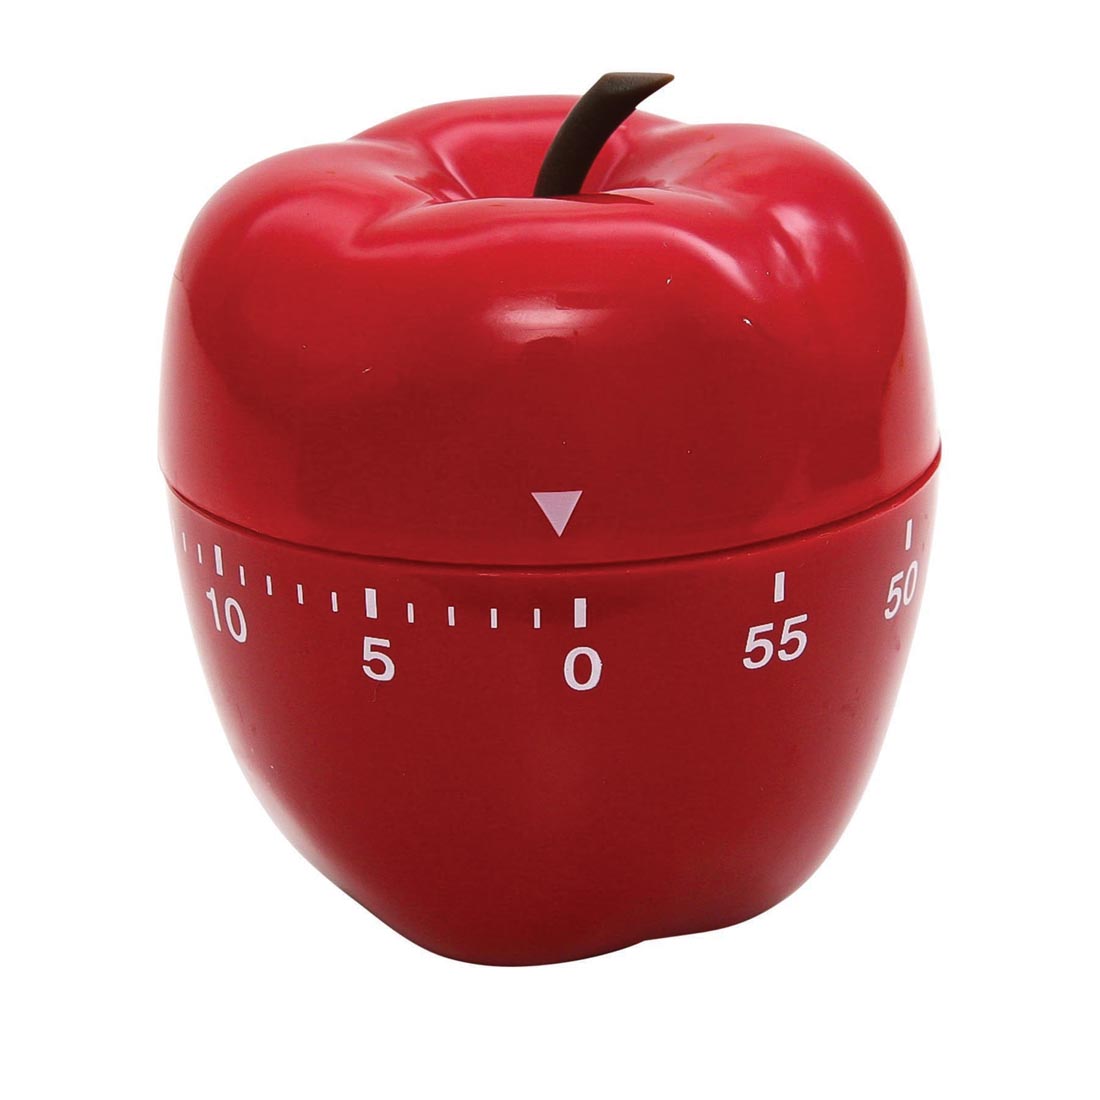 Timer shaped like an apple